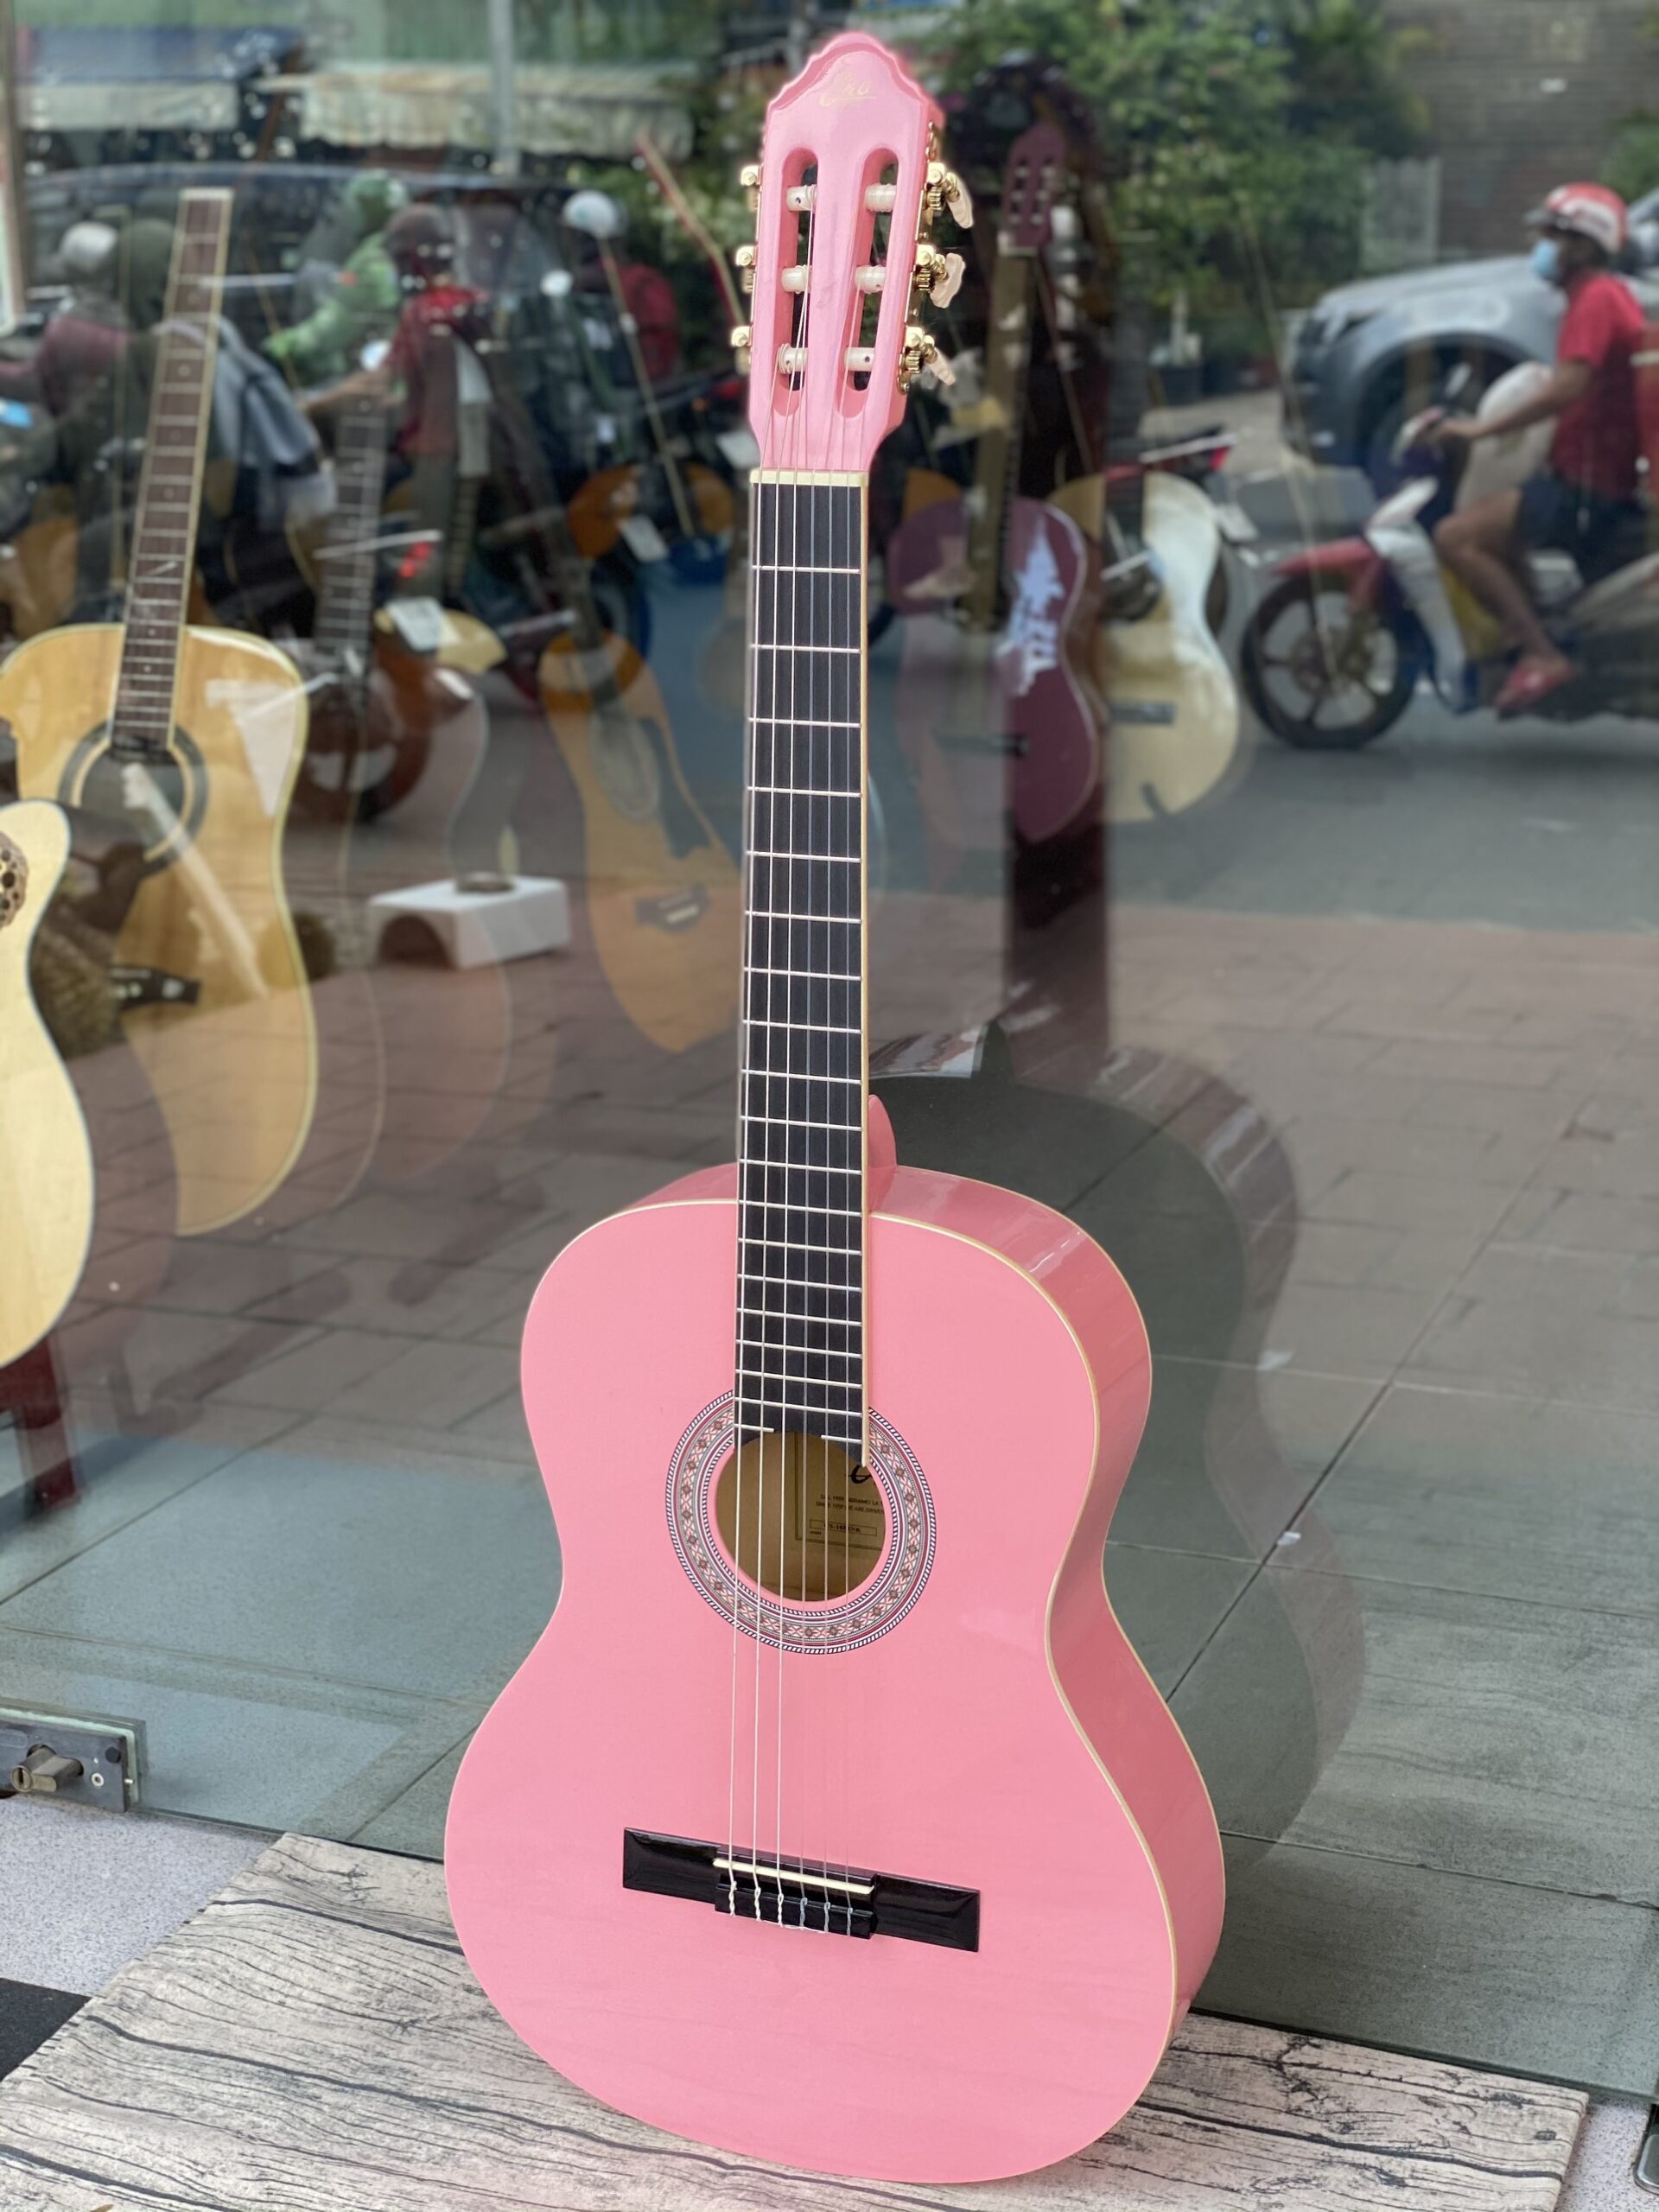 Phong Vân music chuyên nhập khẩu và phân phối các mẫu guitar, đa dạng sản phẩm; với giá ưu đãi và chất lượng tốt. Nay Phong Vân Music giới thiệu một mẫu guitar siêu hot trong thị trường âm nhạc; Guitar Classic EKO CS10 chính hãng.